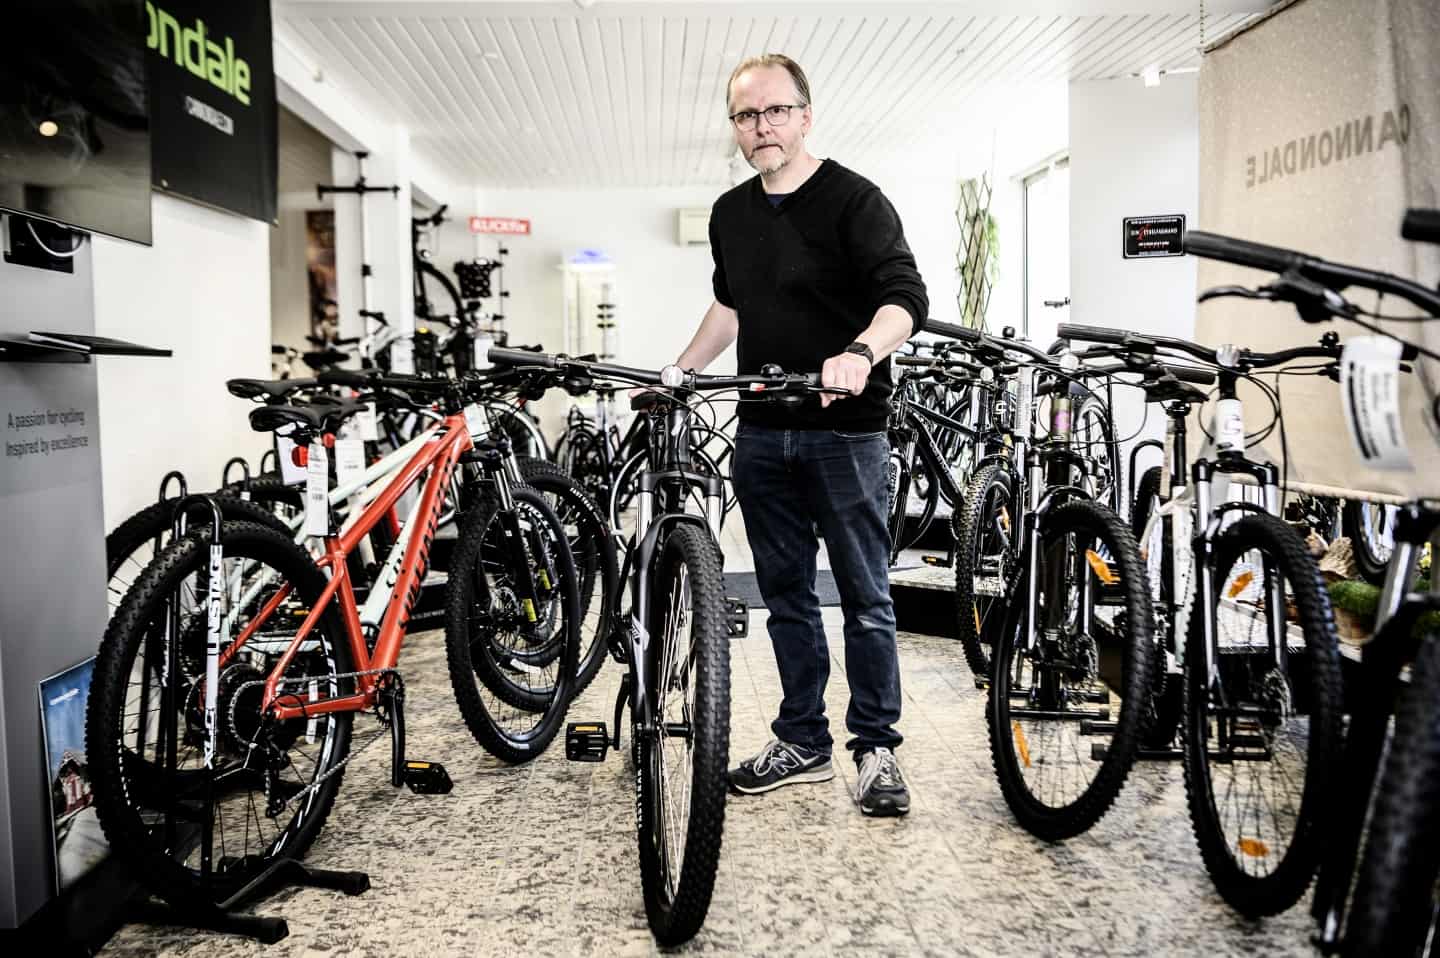 Touren kom til Vejle, Jonas det hele: Lokal cykelhandler ser en vækst i salget mindst 20 procent efter sommerens gule succes | vafo.dk